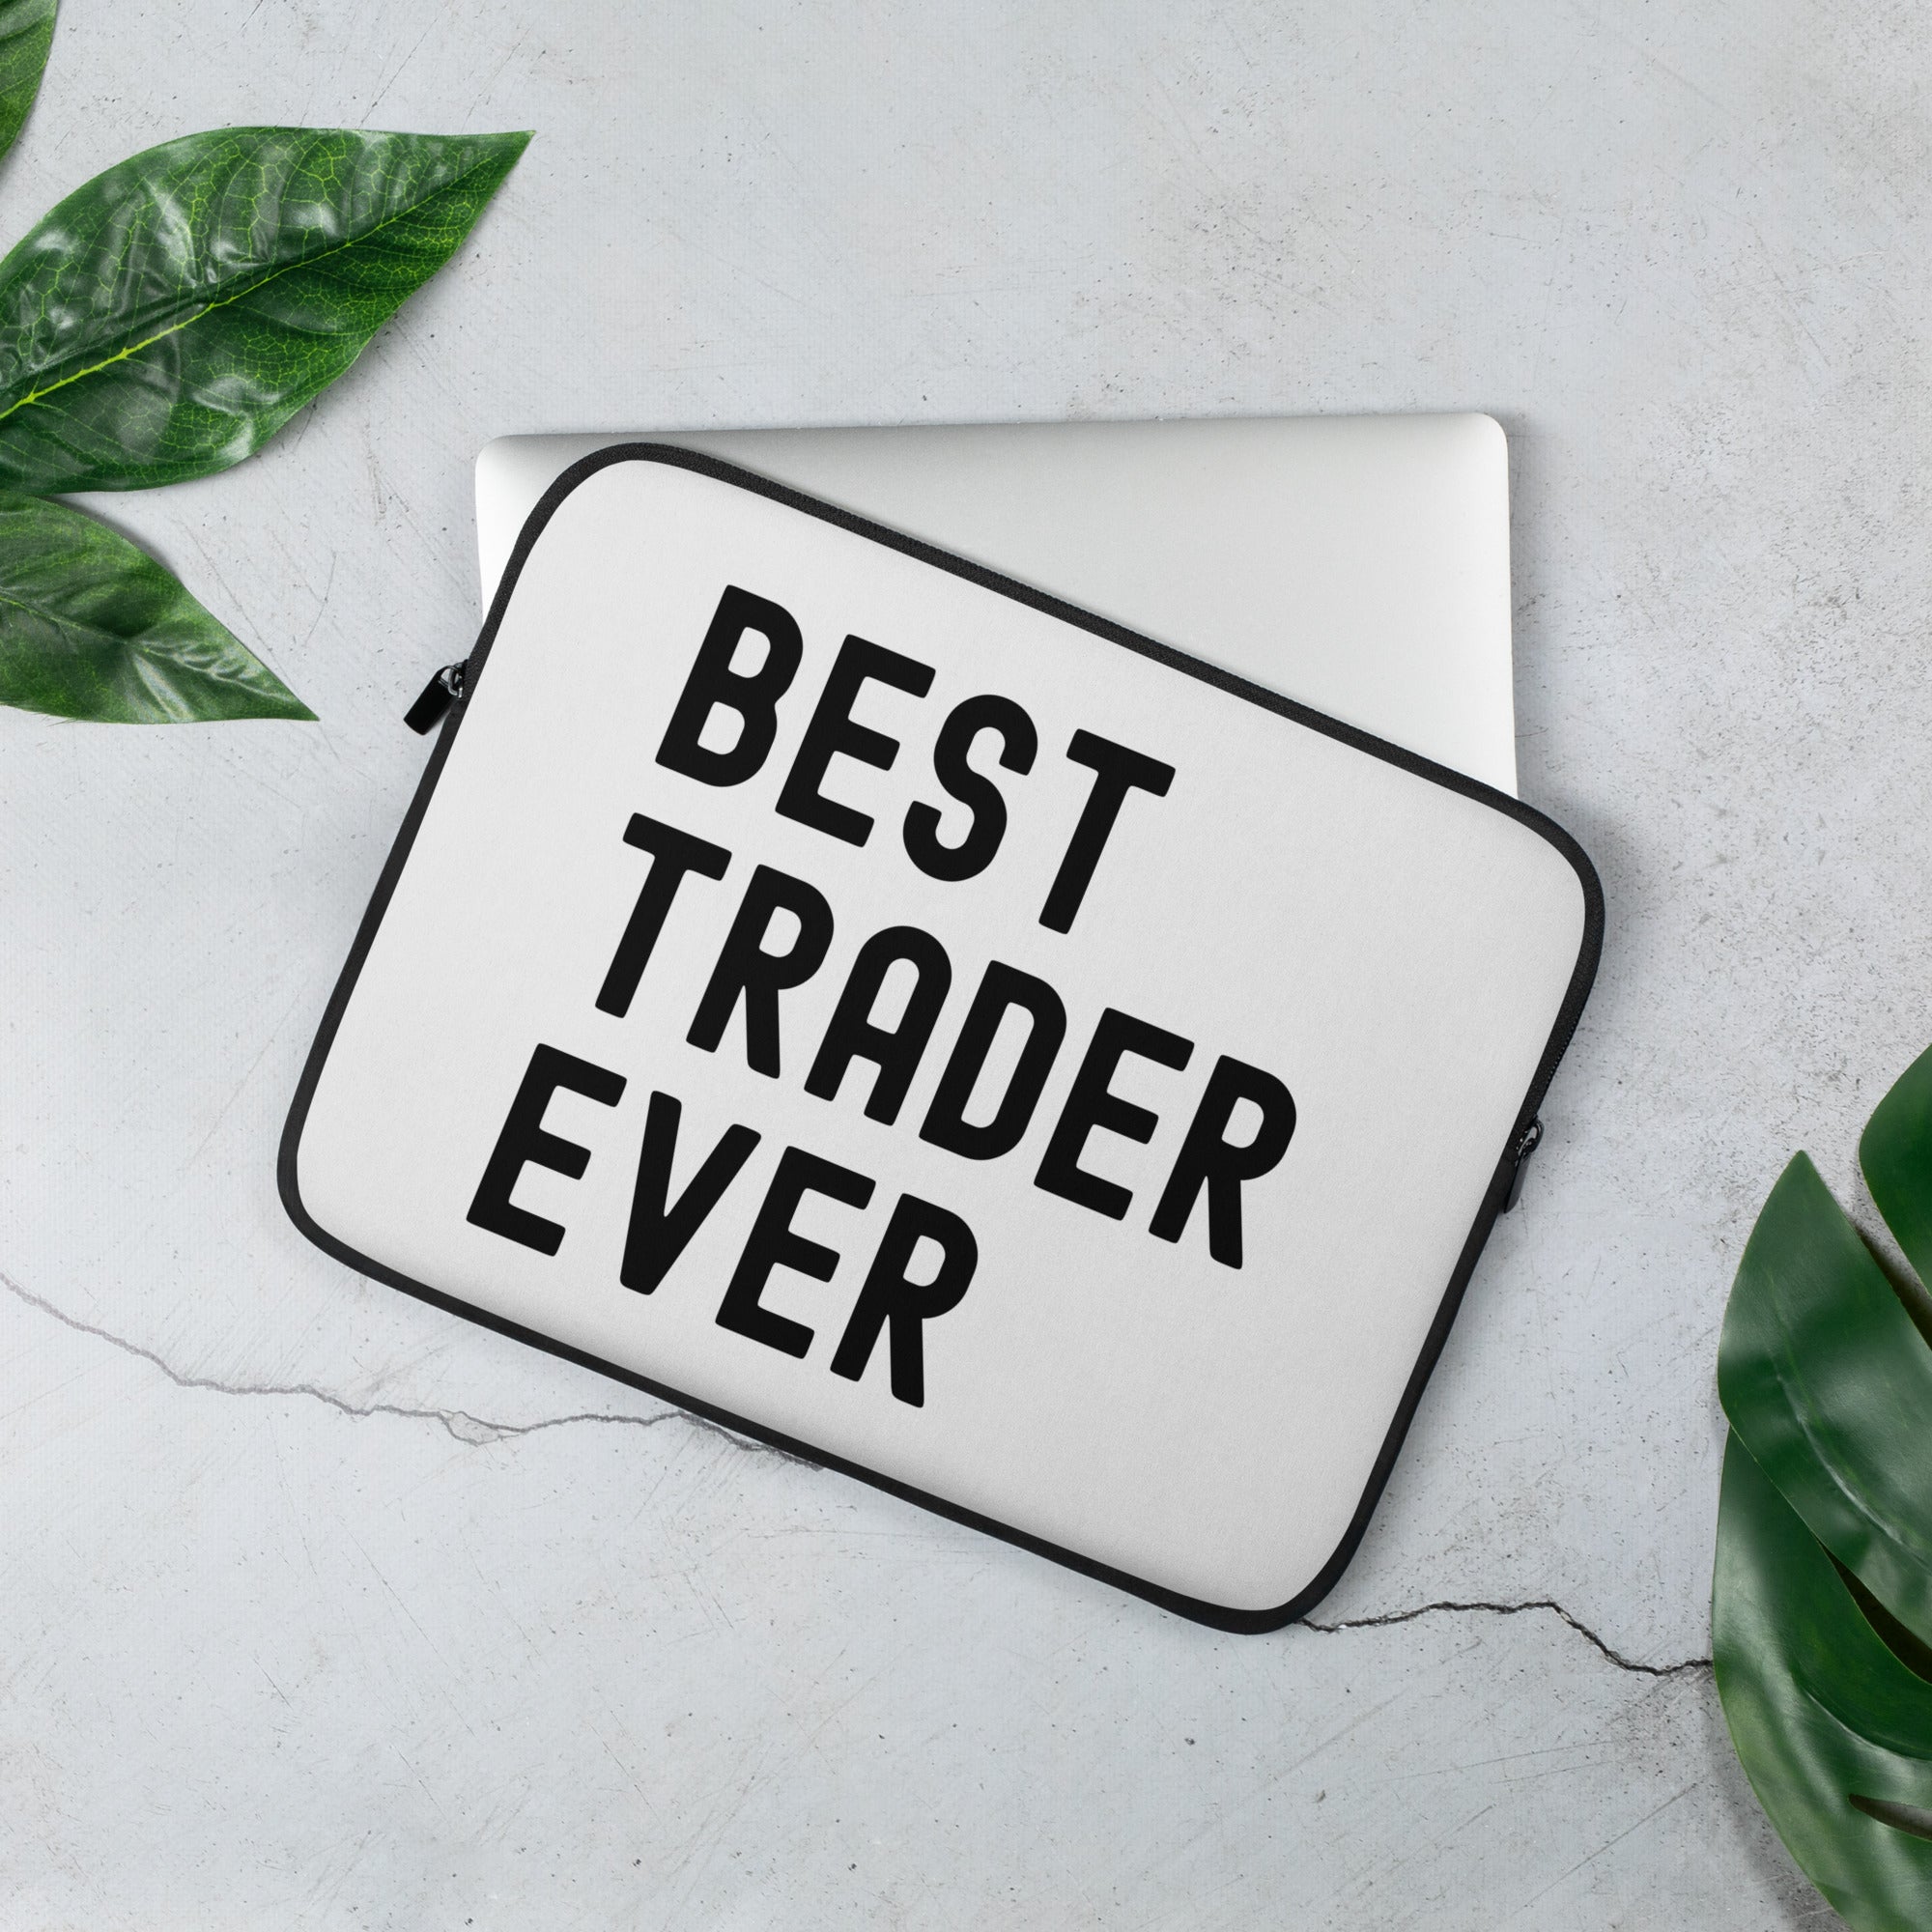 Laptop Sleeve | Best. Trader. Ever.